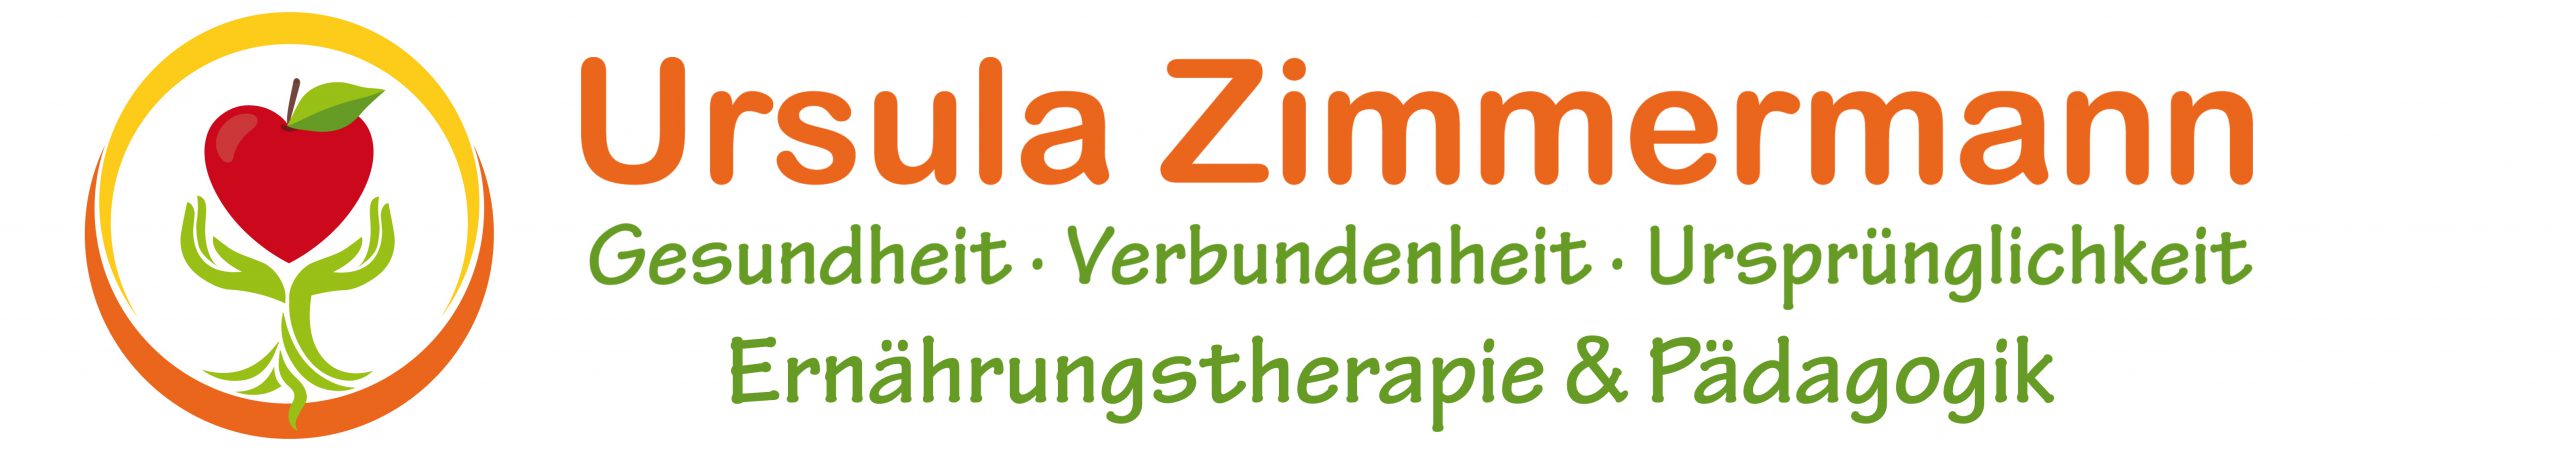 Ursula Zimmermann - Ernährungsberatung und -therapie Logo